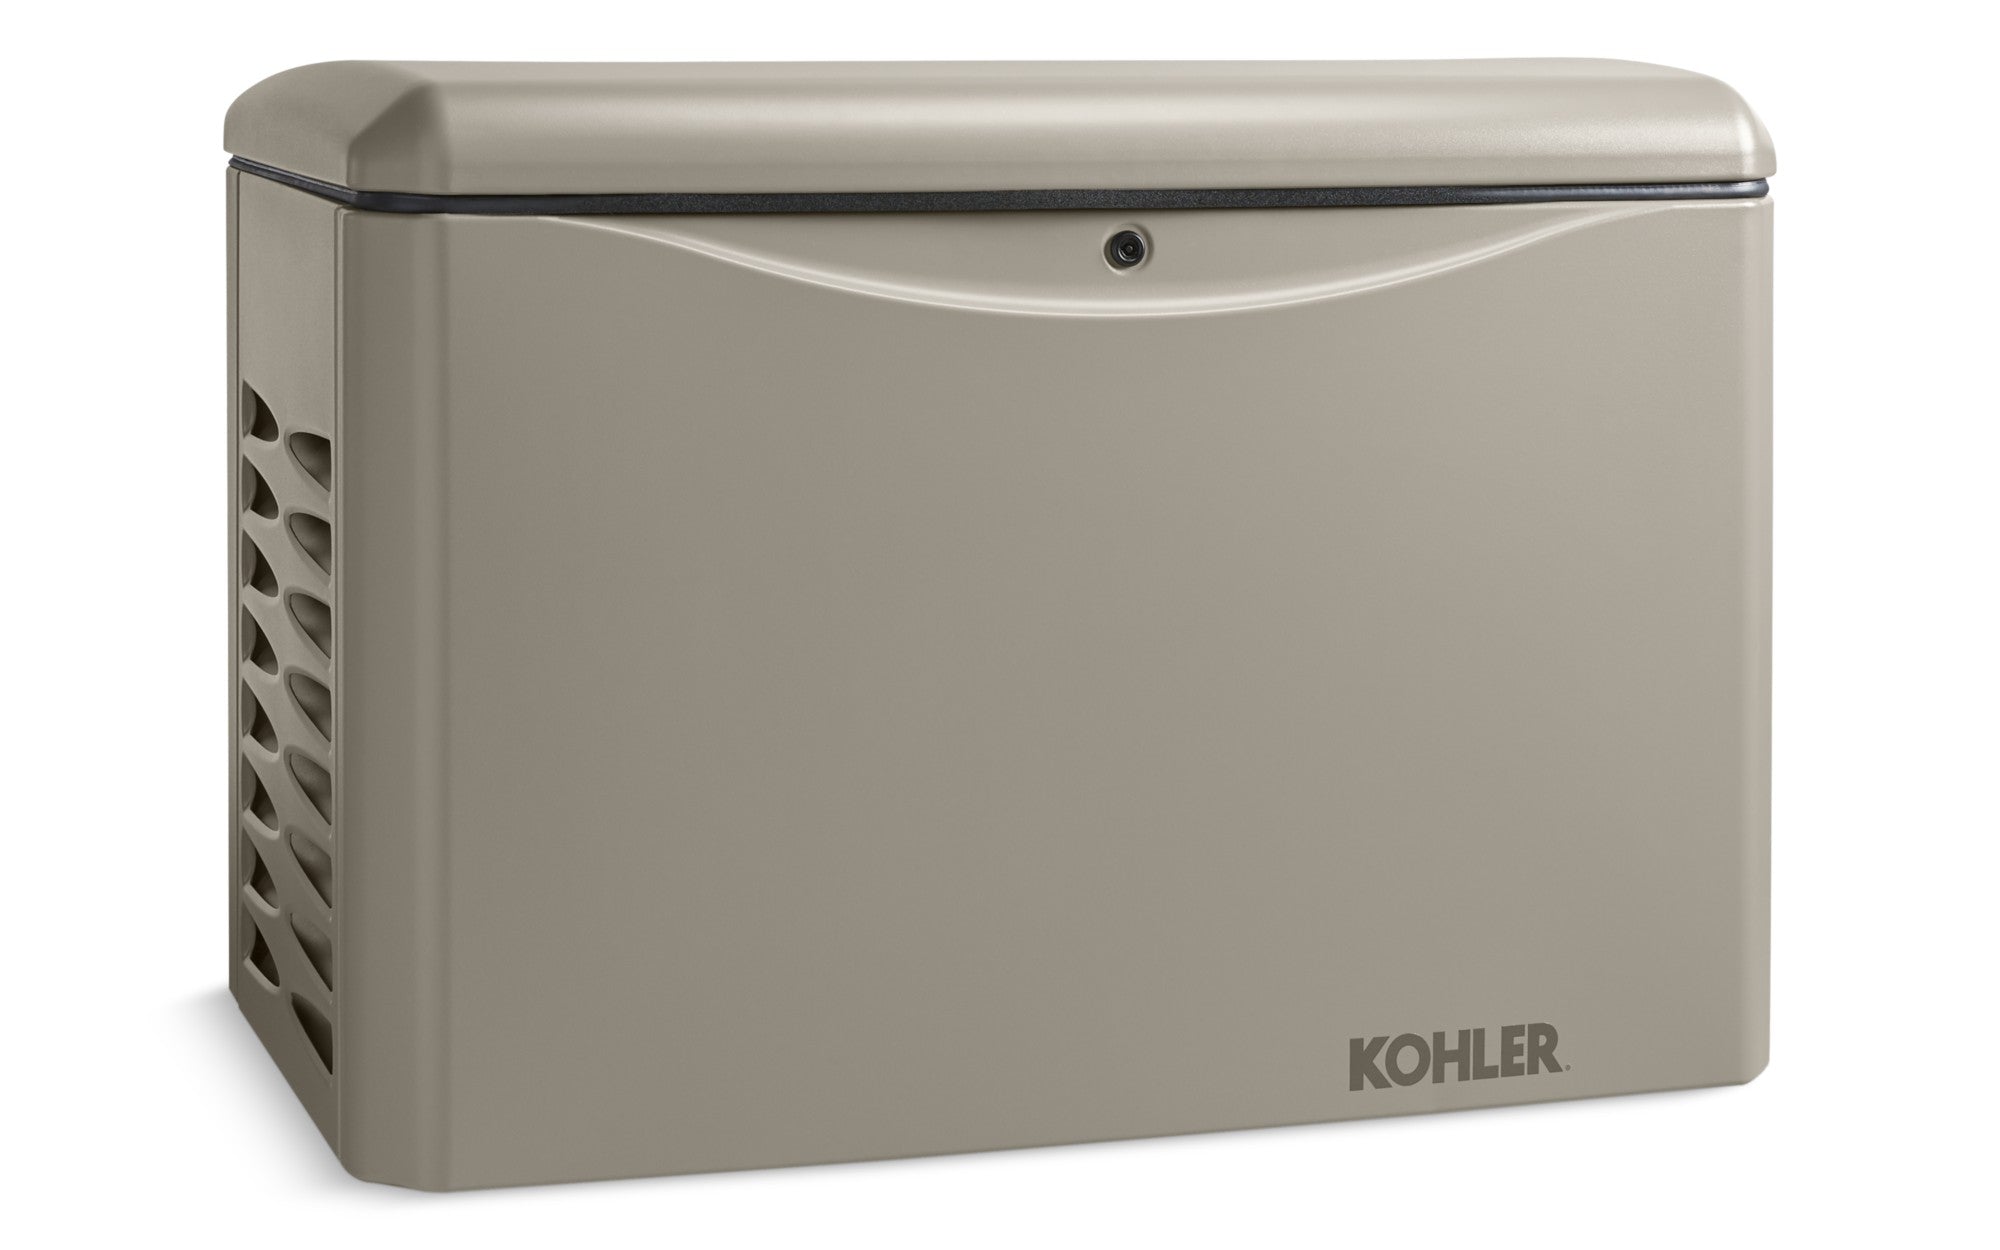 Kohler, Kohler 14RCA 14KW 120/240 Single Phase Standby Generator with OnCue Plus New